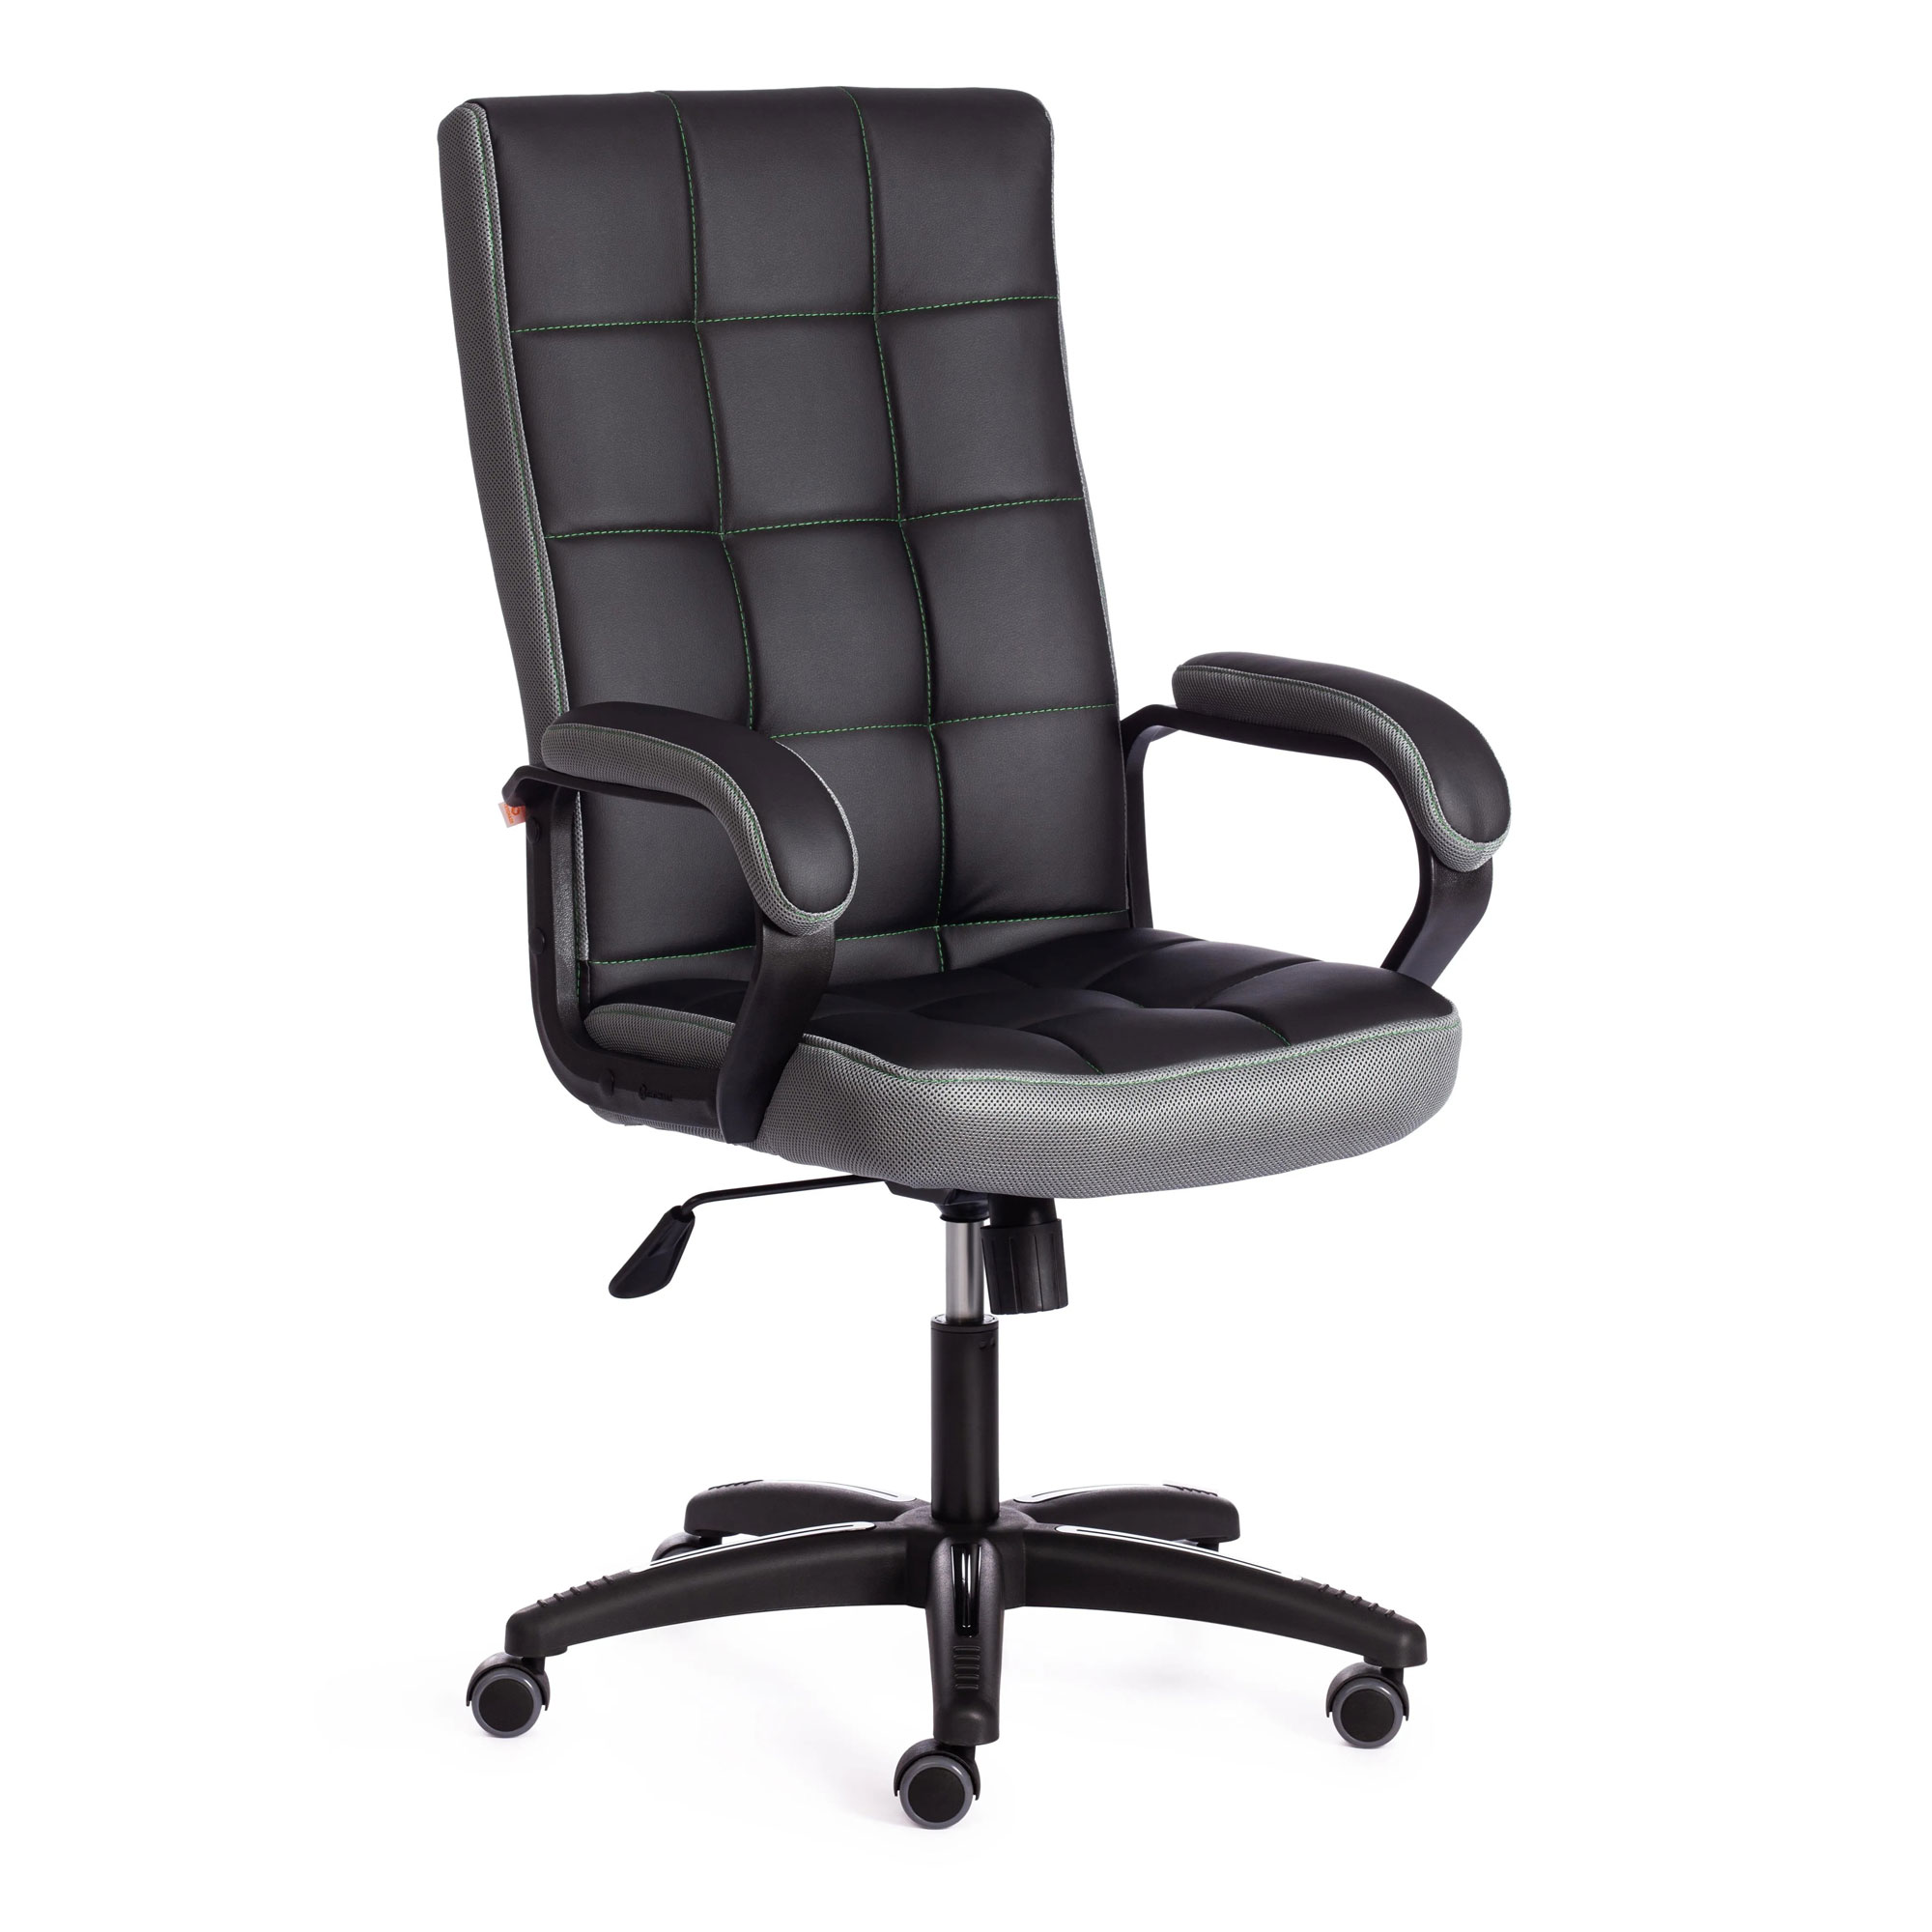 Кресло компьютерное TC искусственная кожа чёрное с серым 61х47х126 см кресло компьютерное tc driver искусственная кожа чёрное с бордовым 55х49х126 см